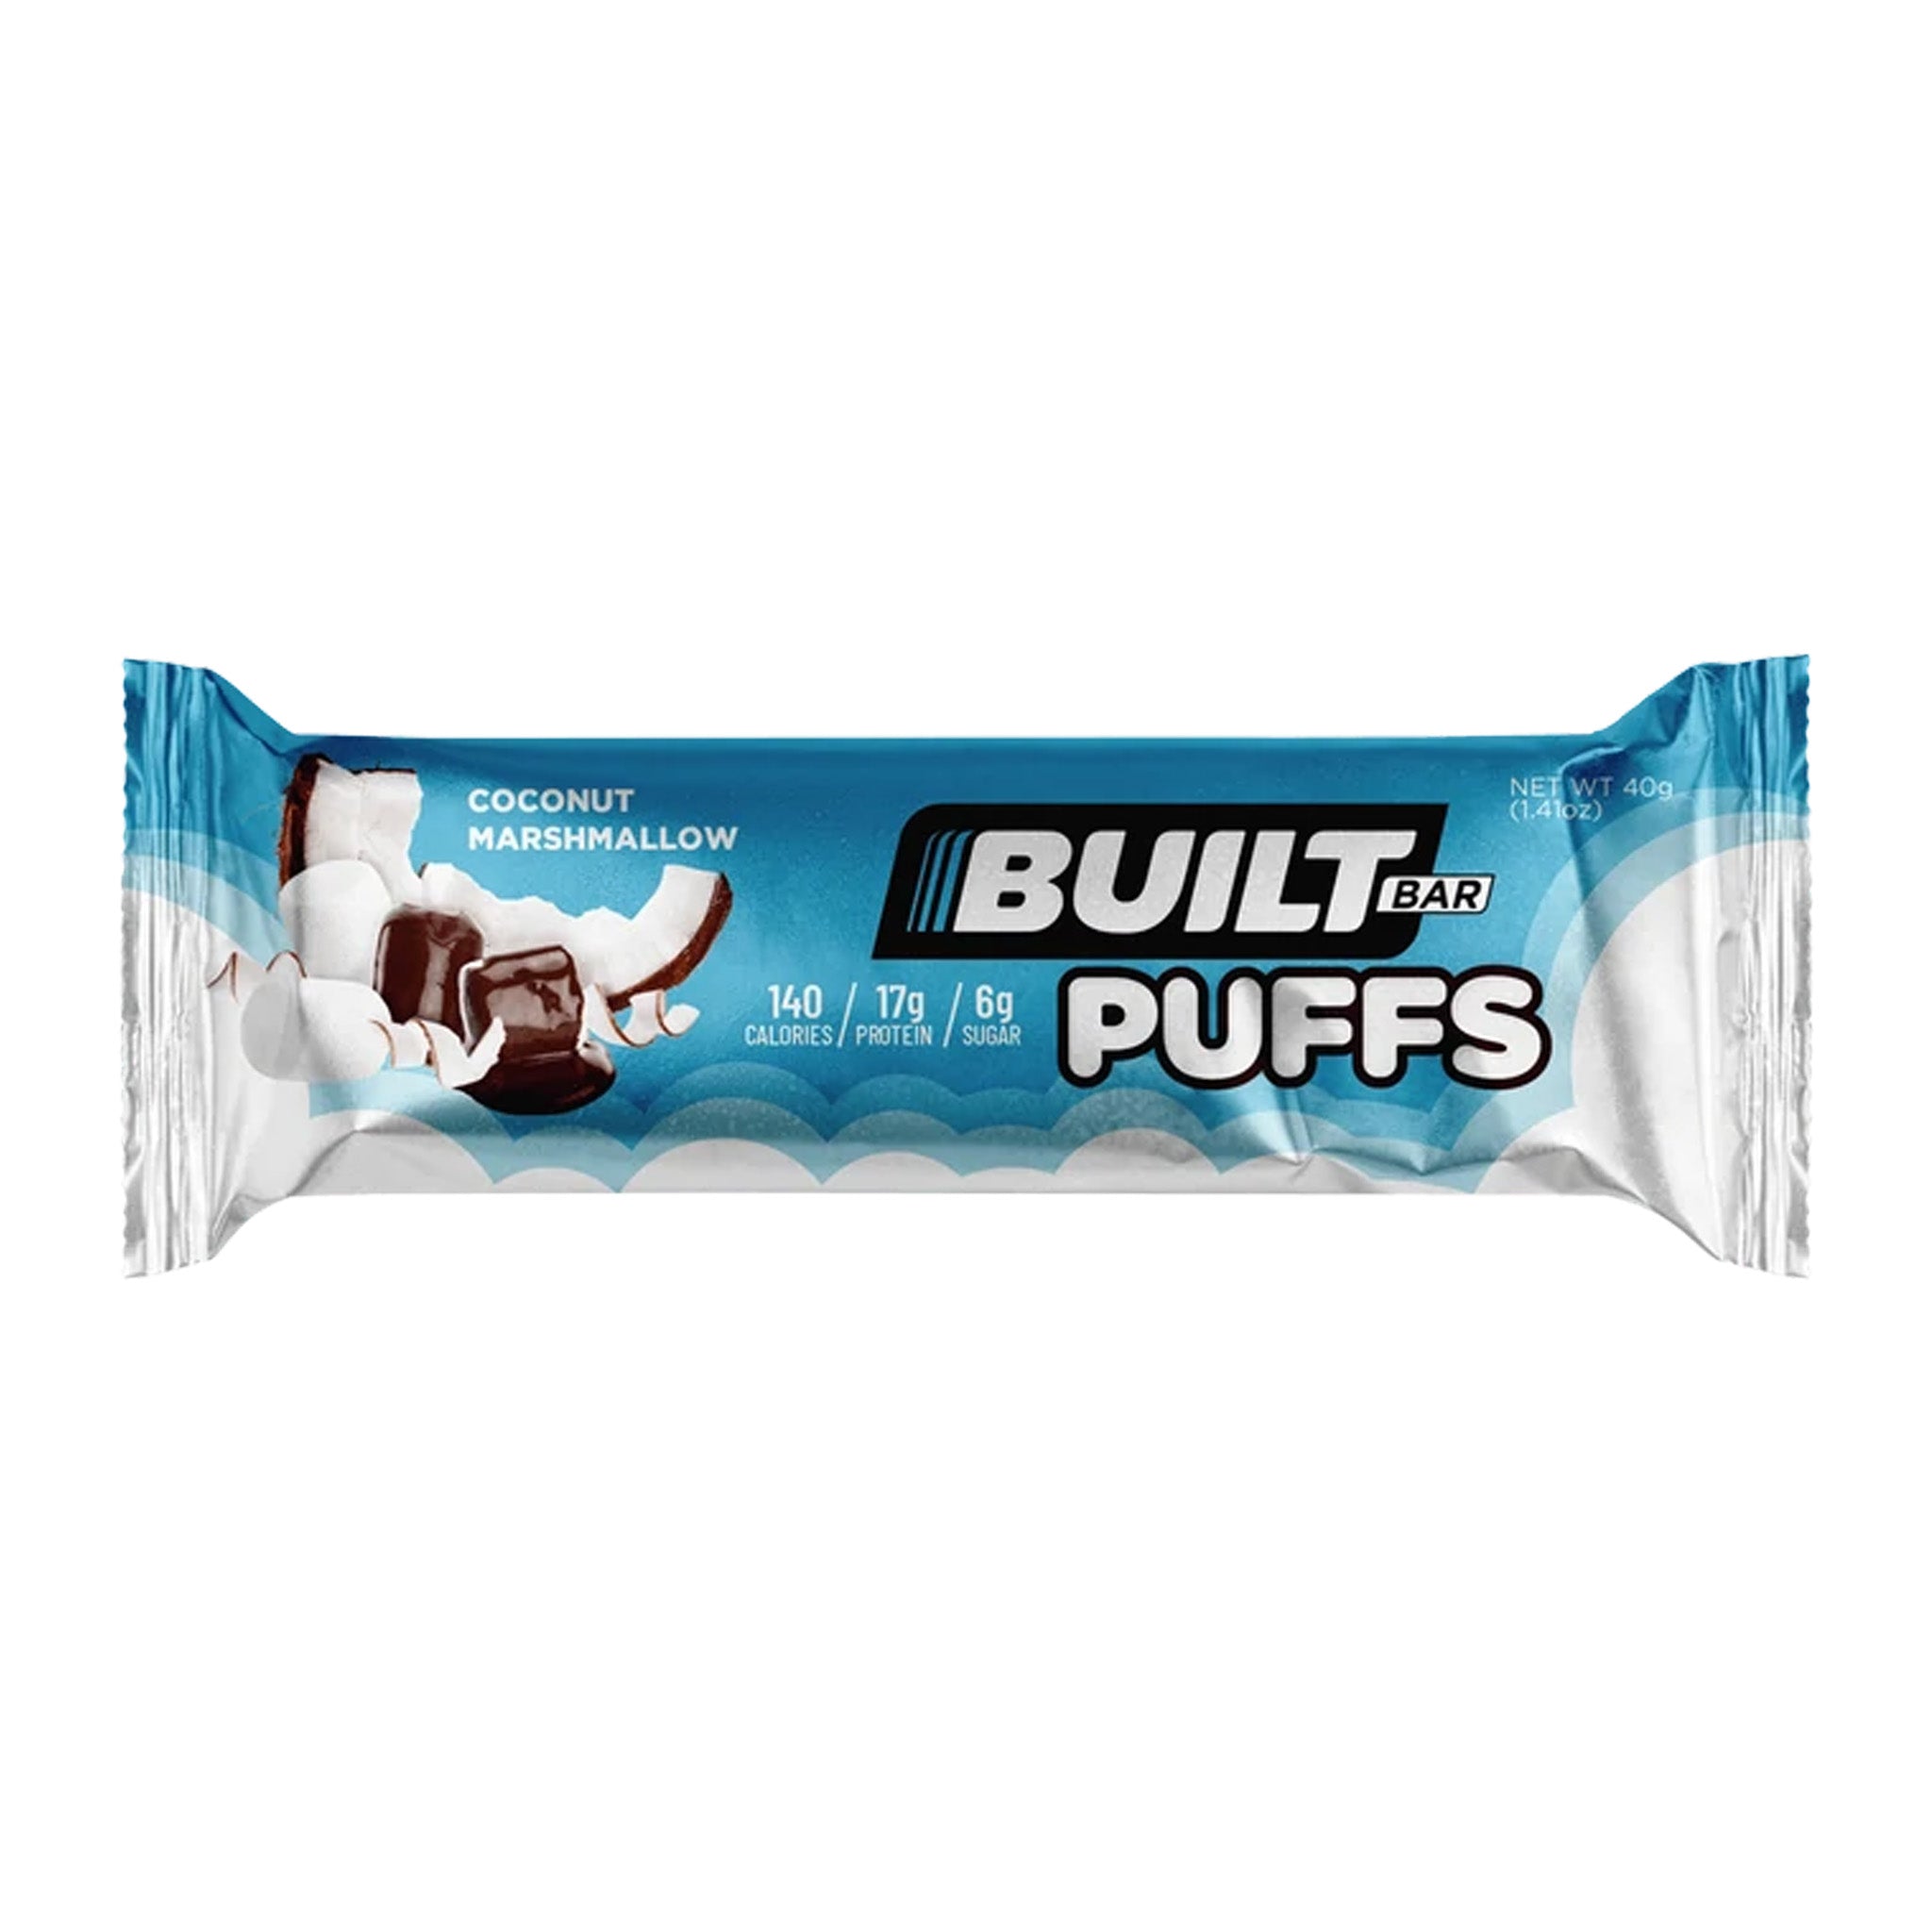 Built Bar Puffs (1 Bar)